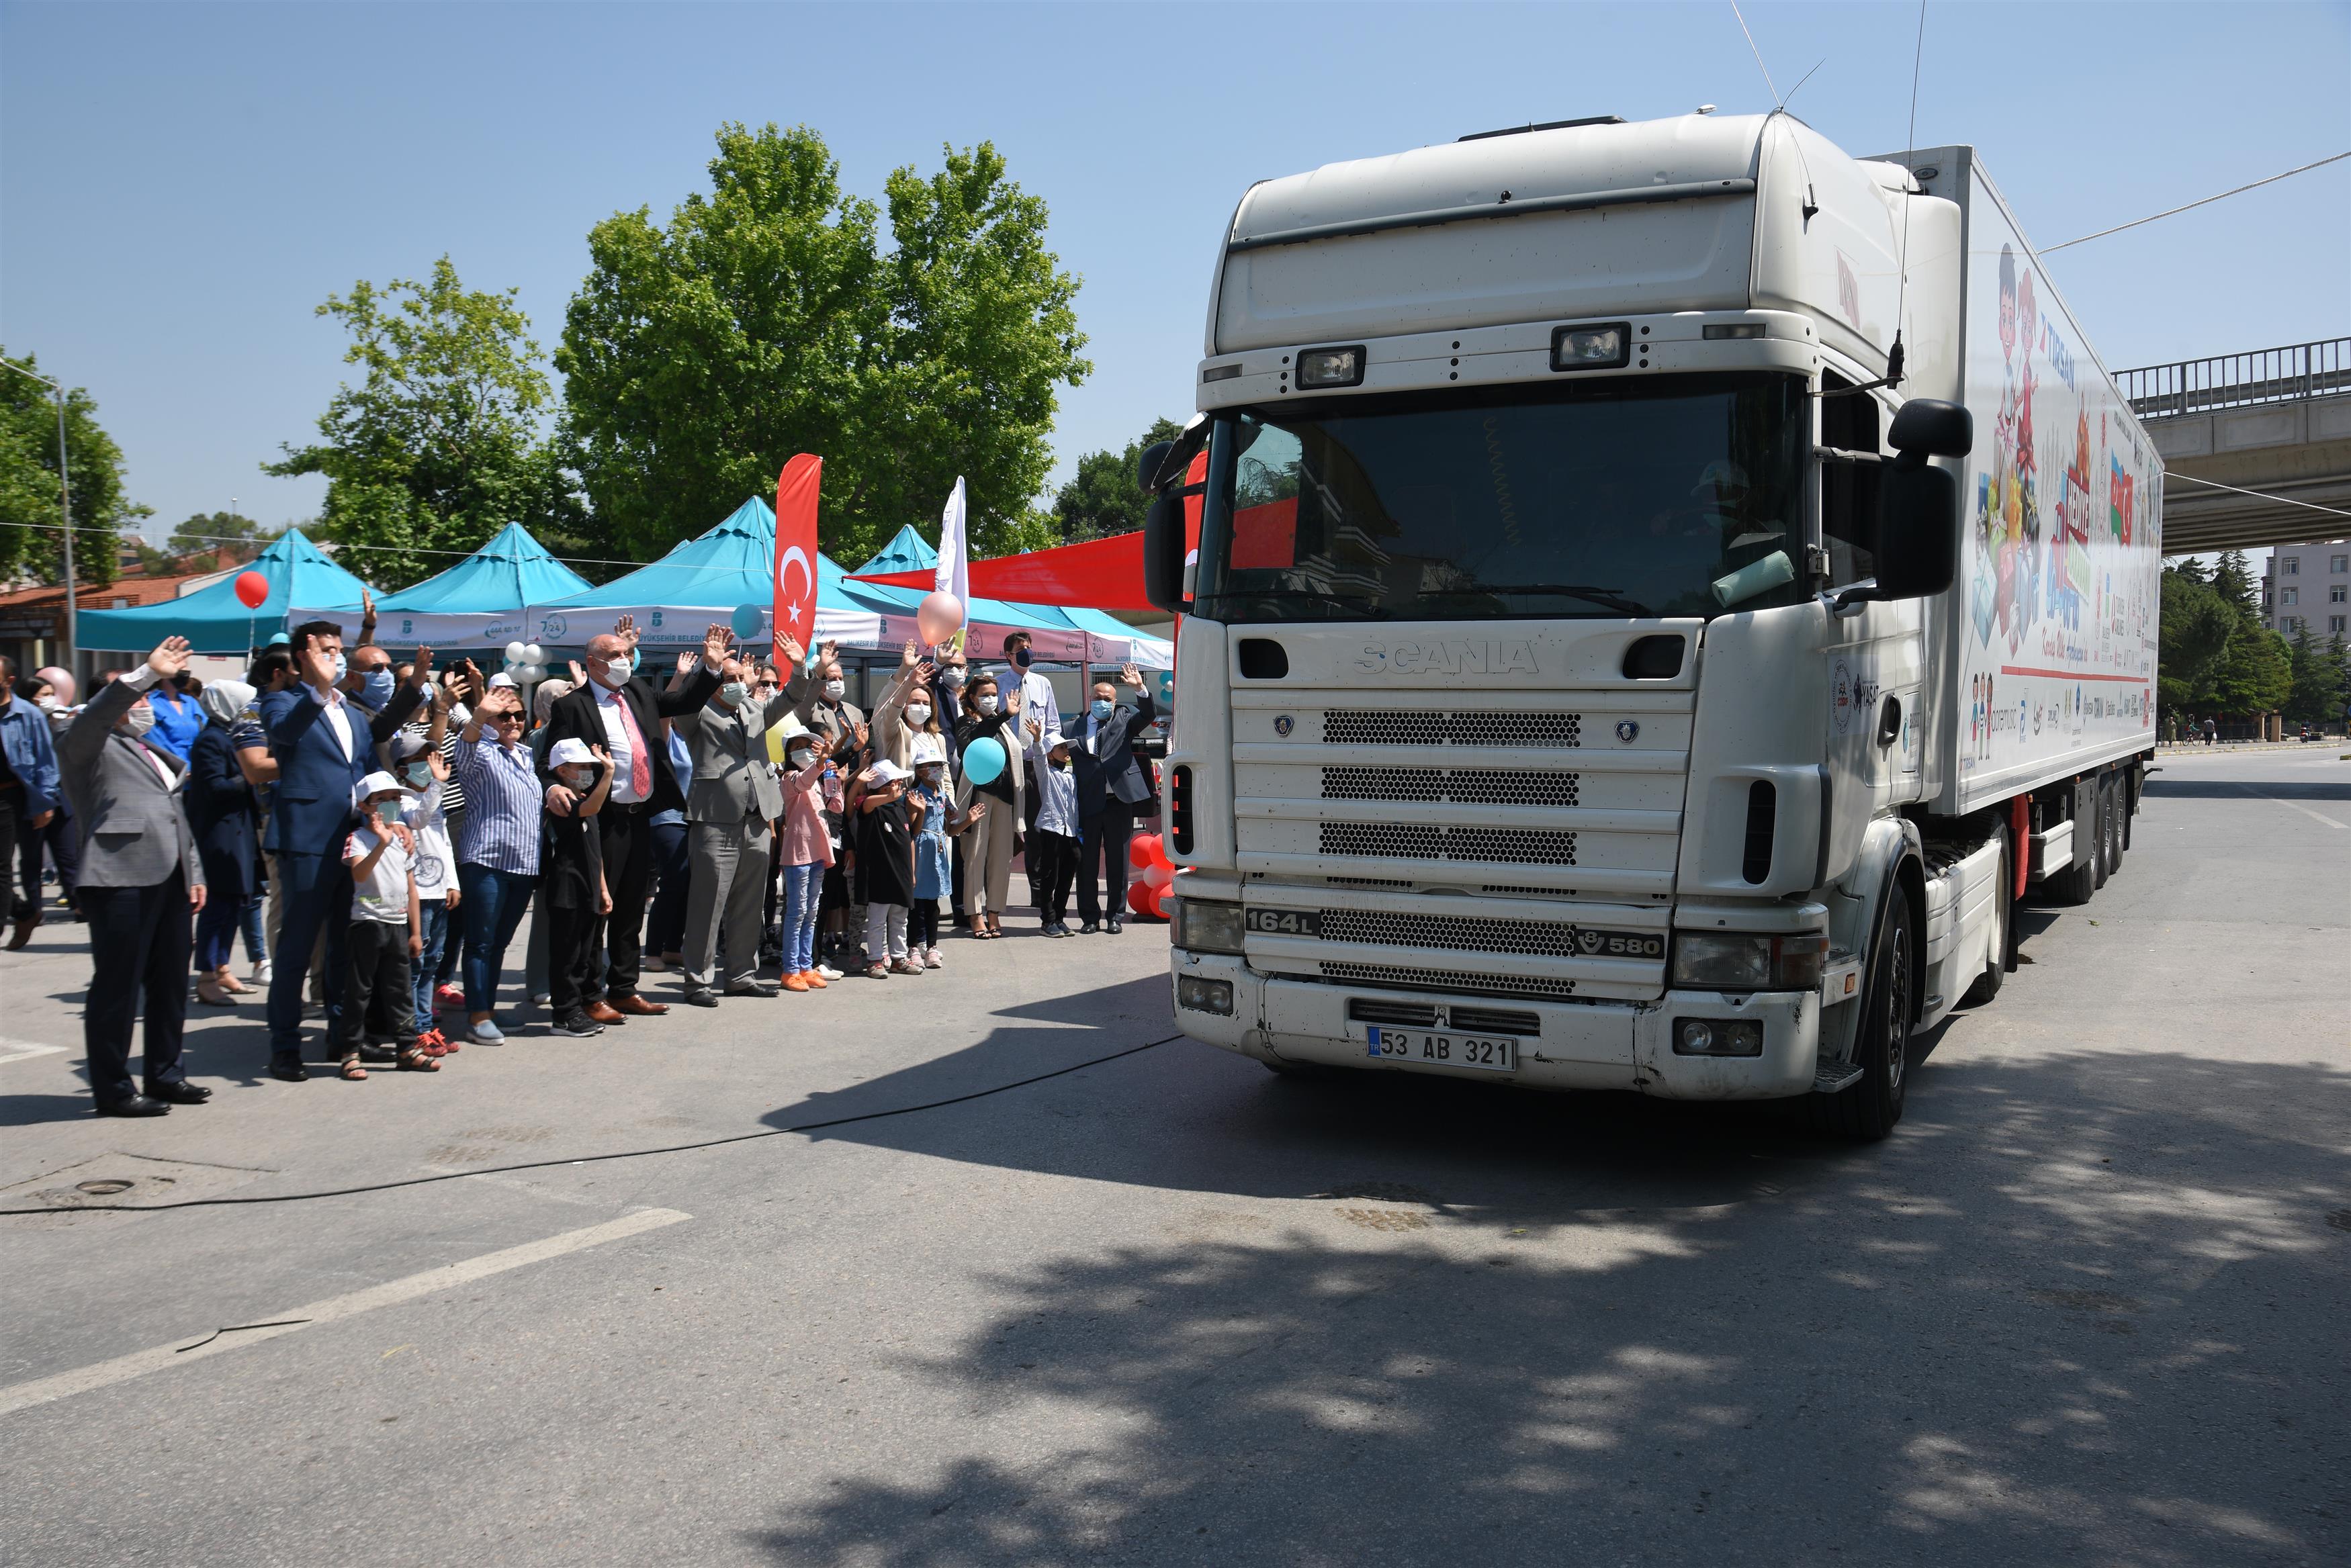 1 Haziran Dünya Çocuk Günü’nde, Tovuz şehrinde olacak karavanda bulunan yaklaşık 40 bin hediye, Azeri çocuklara iletilecek.